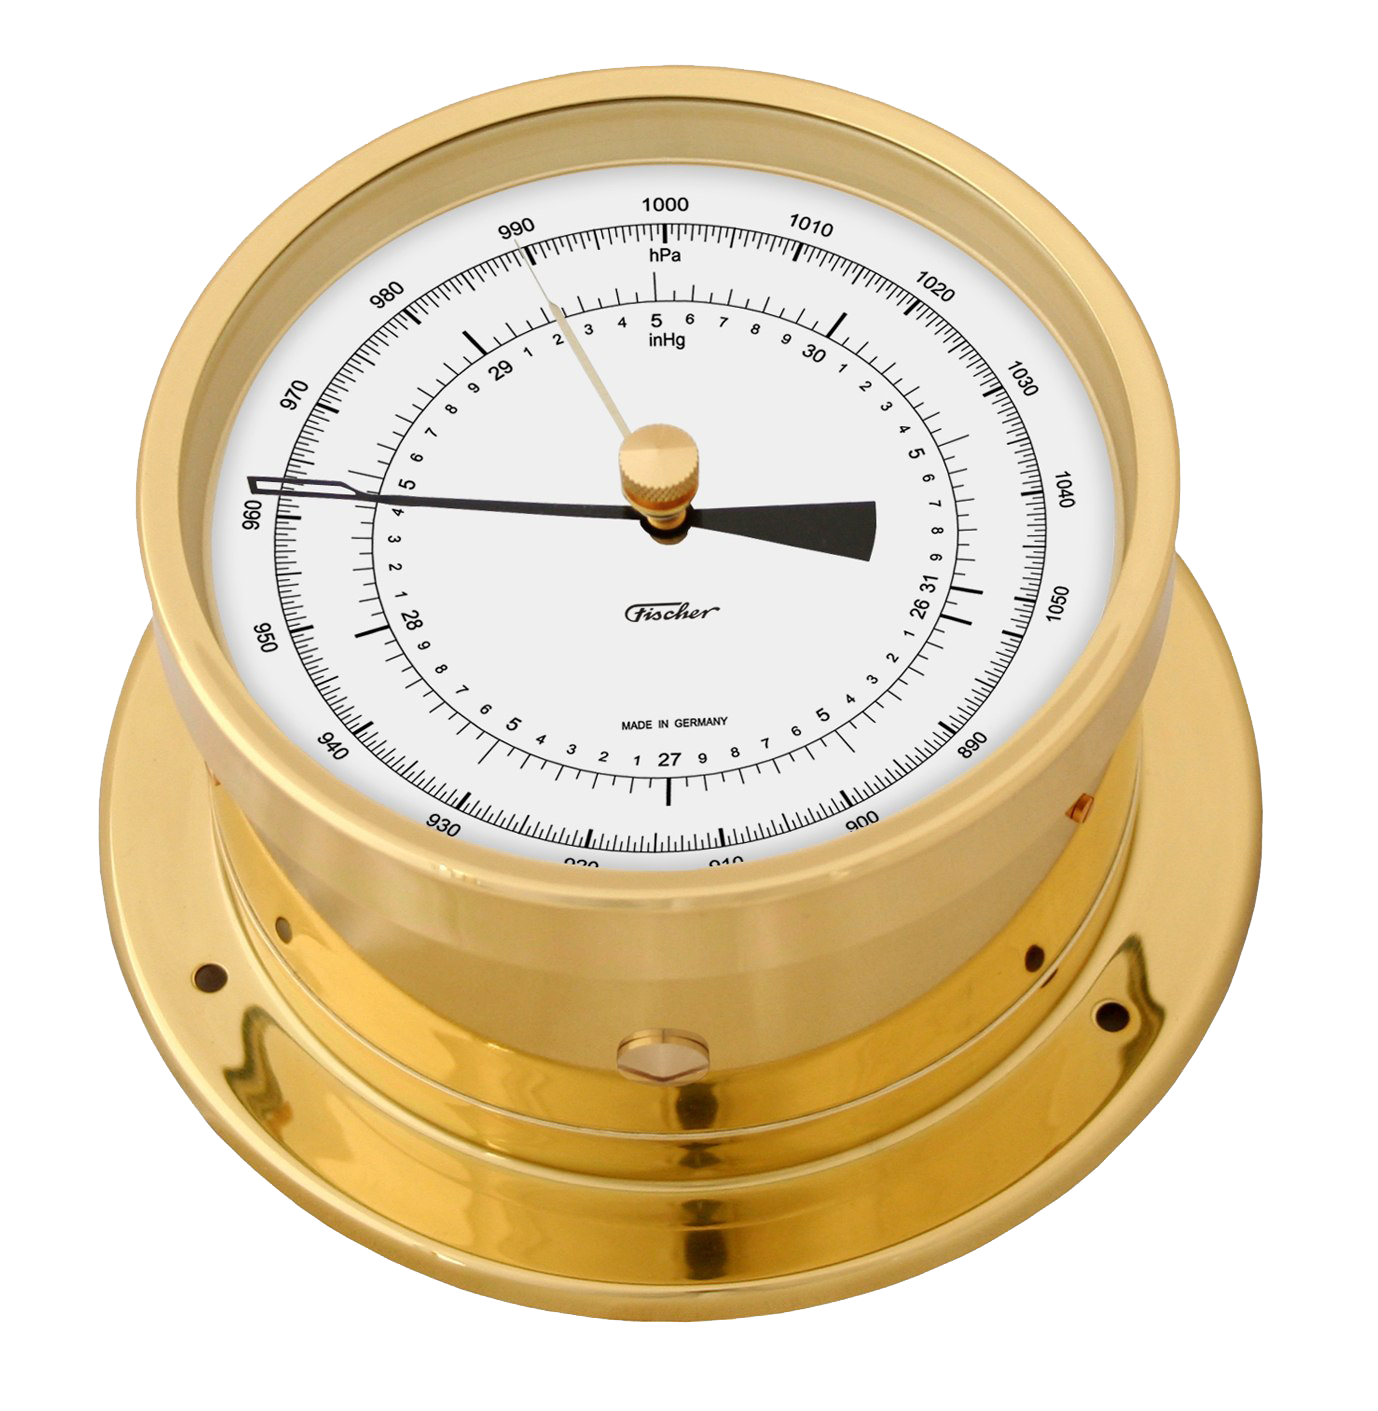 Brass Barometer PNG Image Background